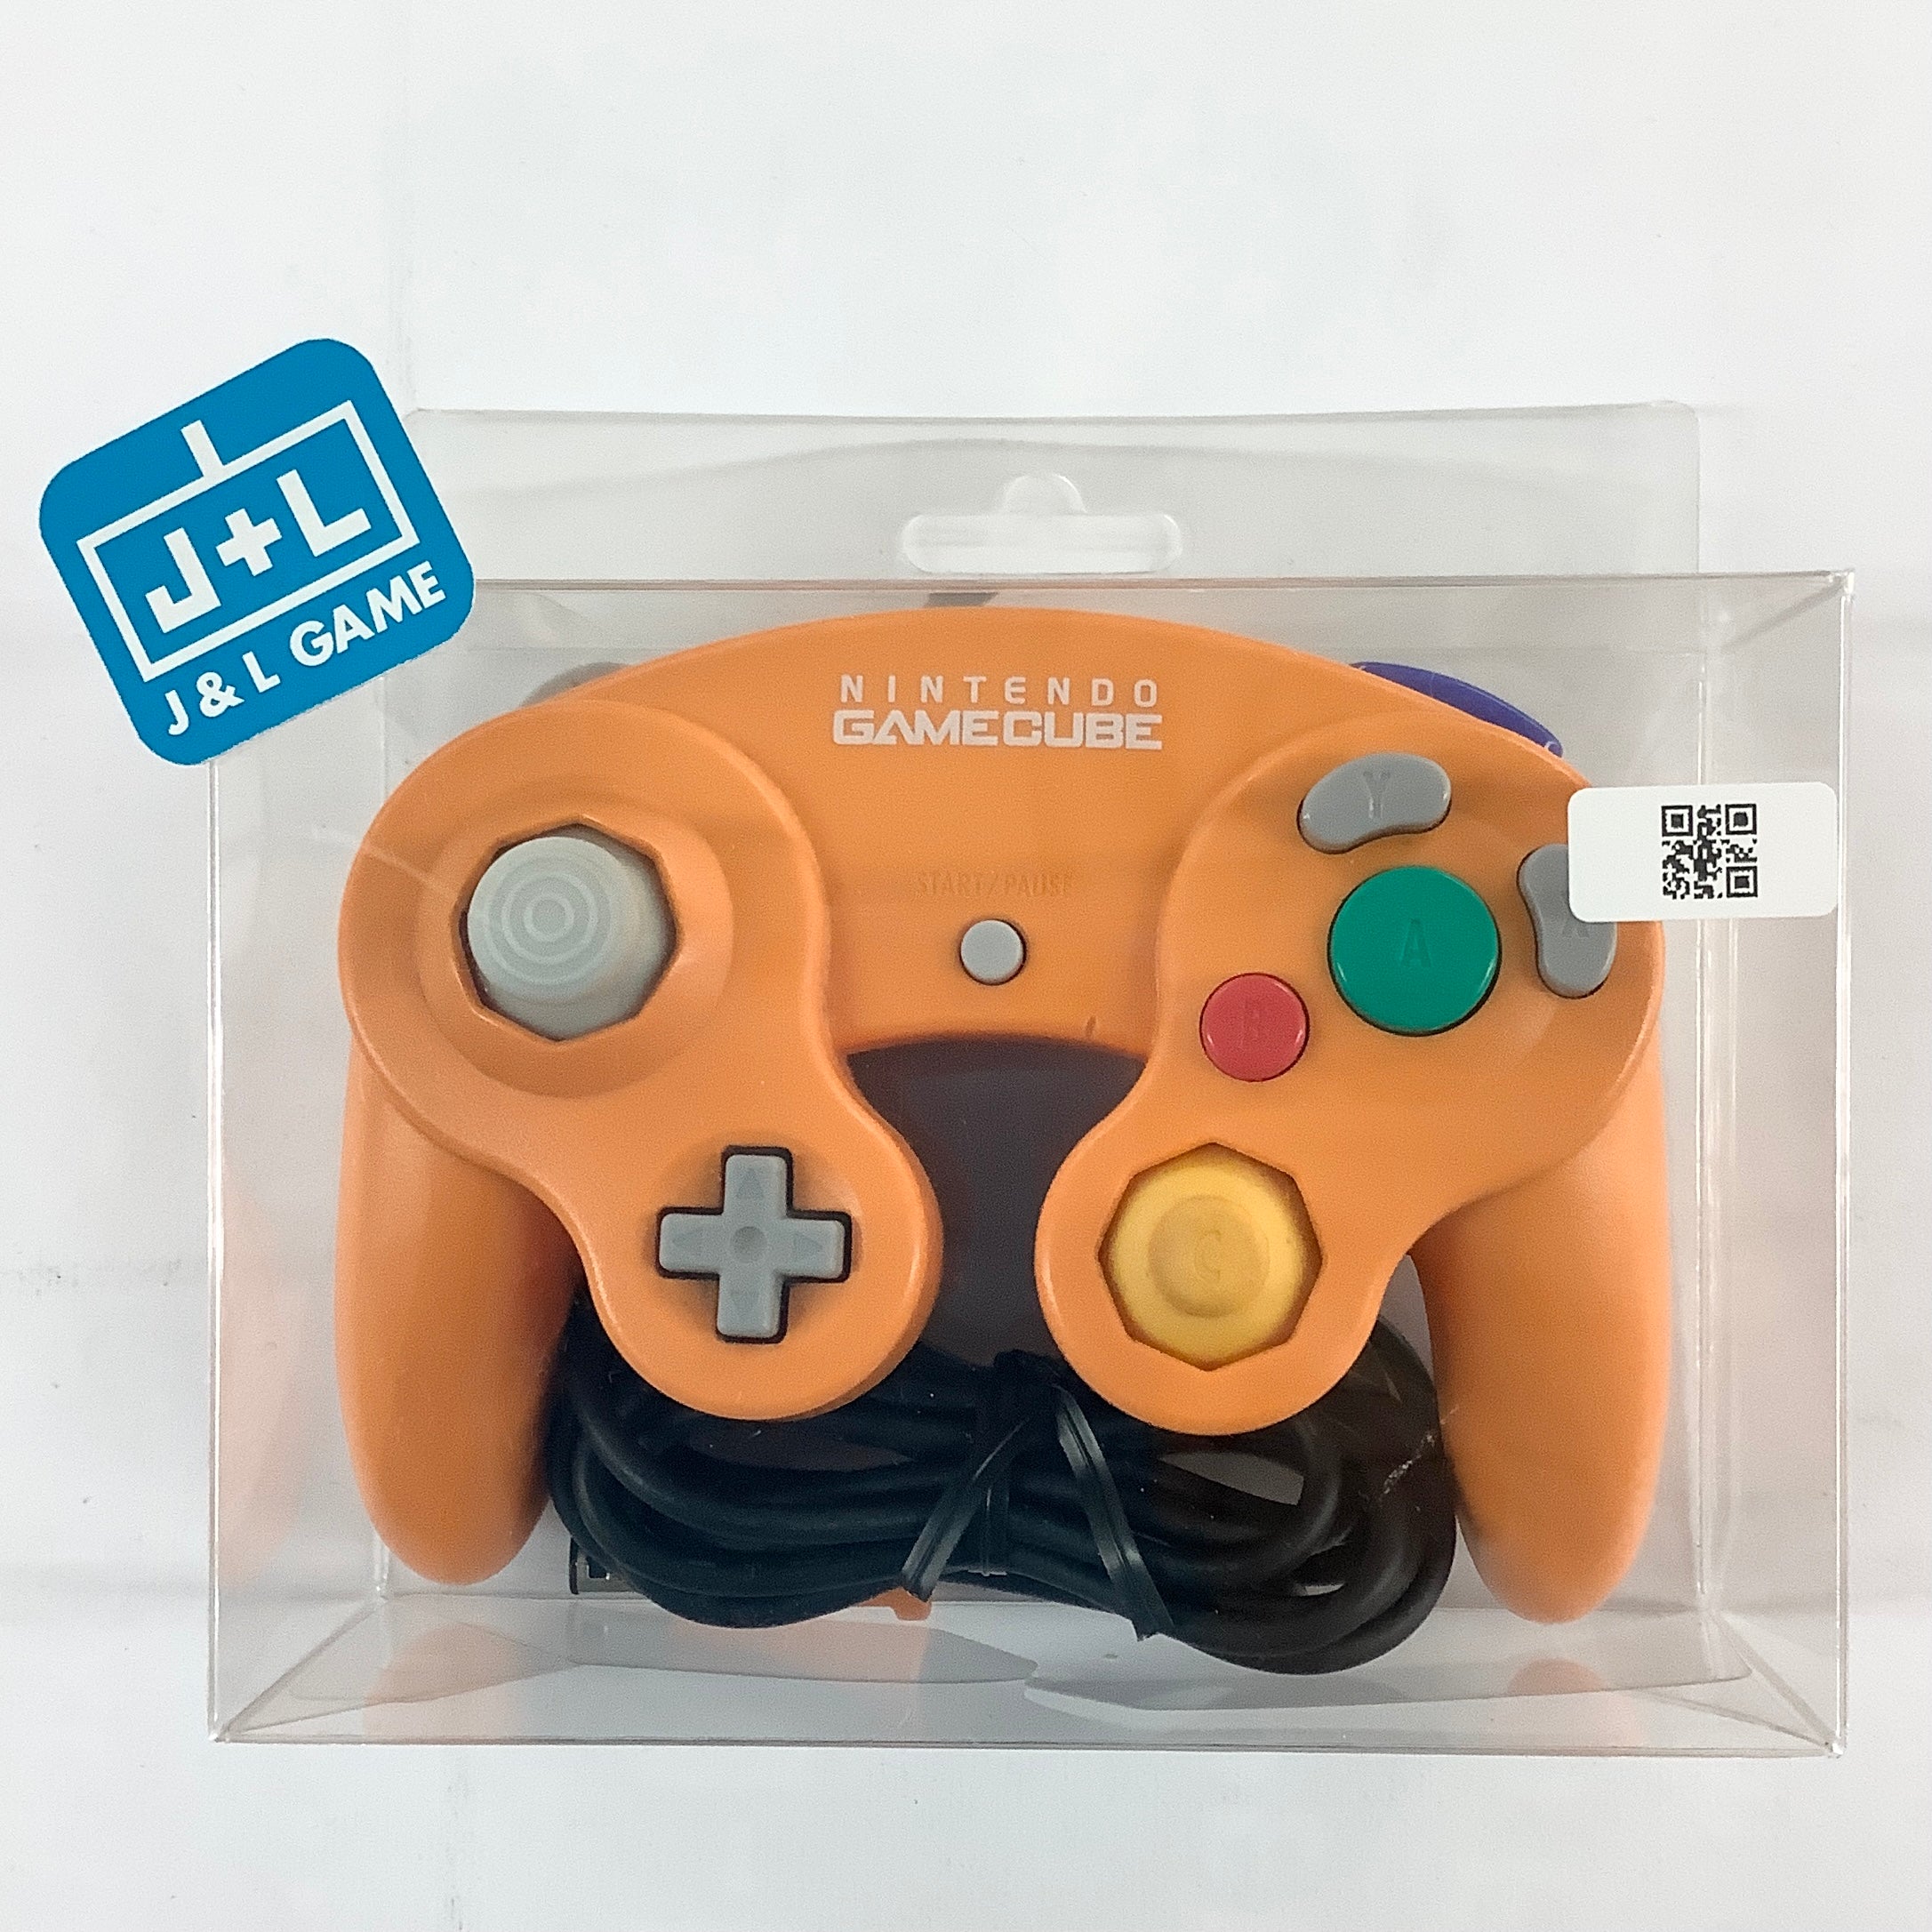 Nintendo GameCube Controller (Spice Orange) - (GC) GameCube [Pre-Owned] Accessories Nintendo   